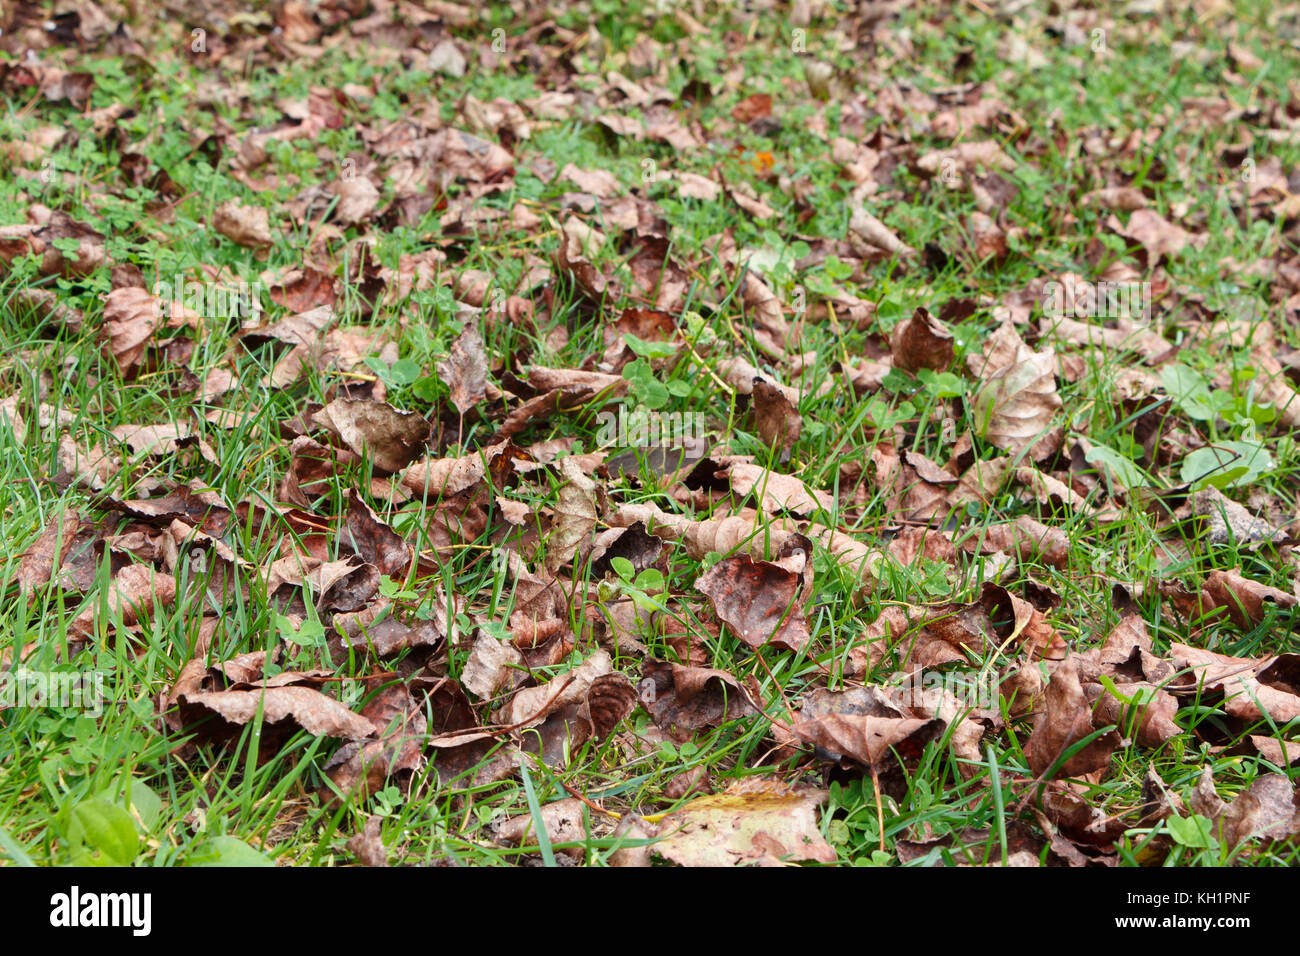 Les feuilles mortes sur le gazon d'un jardin Banque D'Images